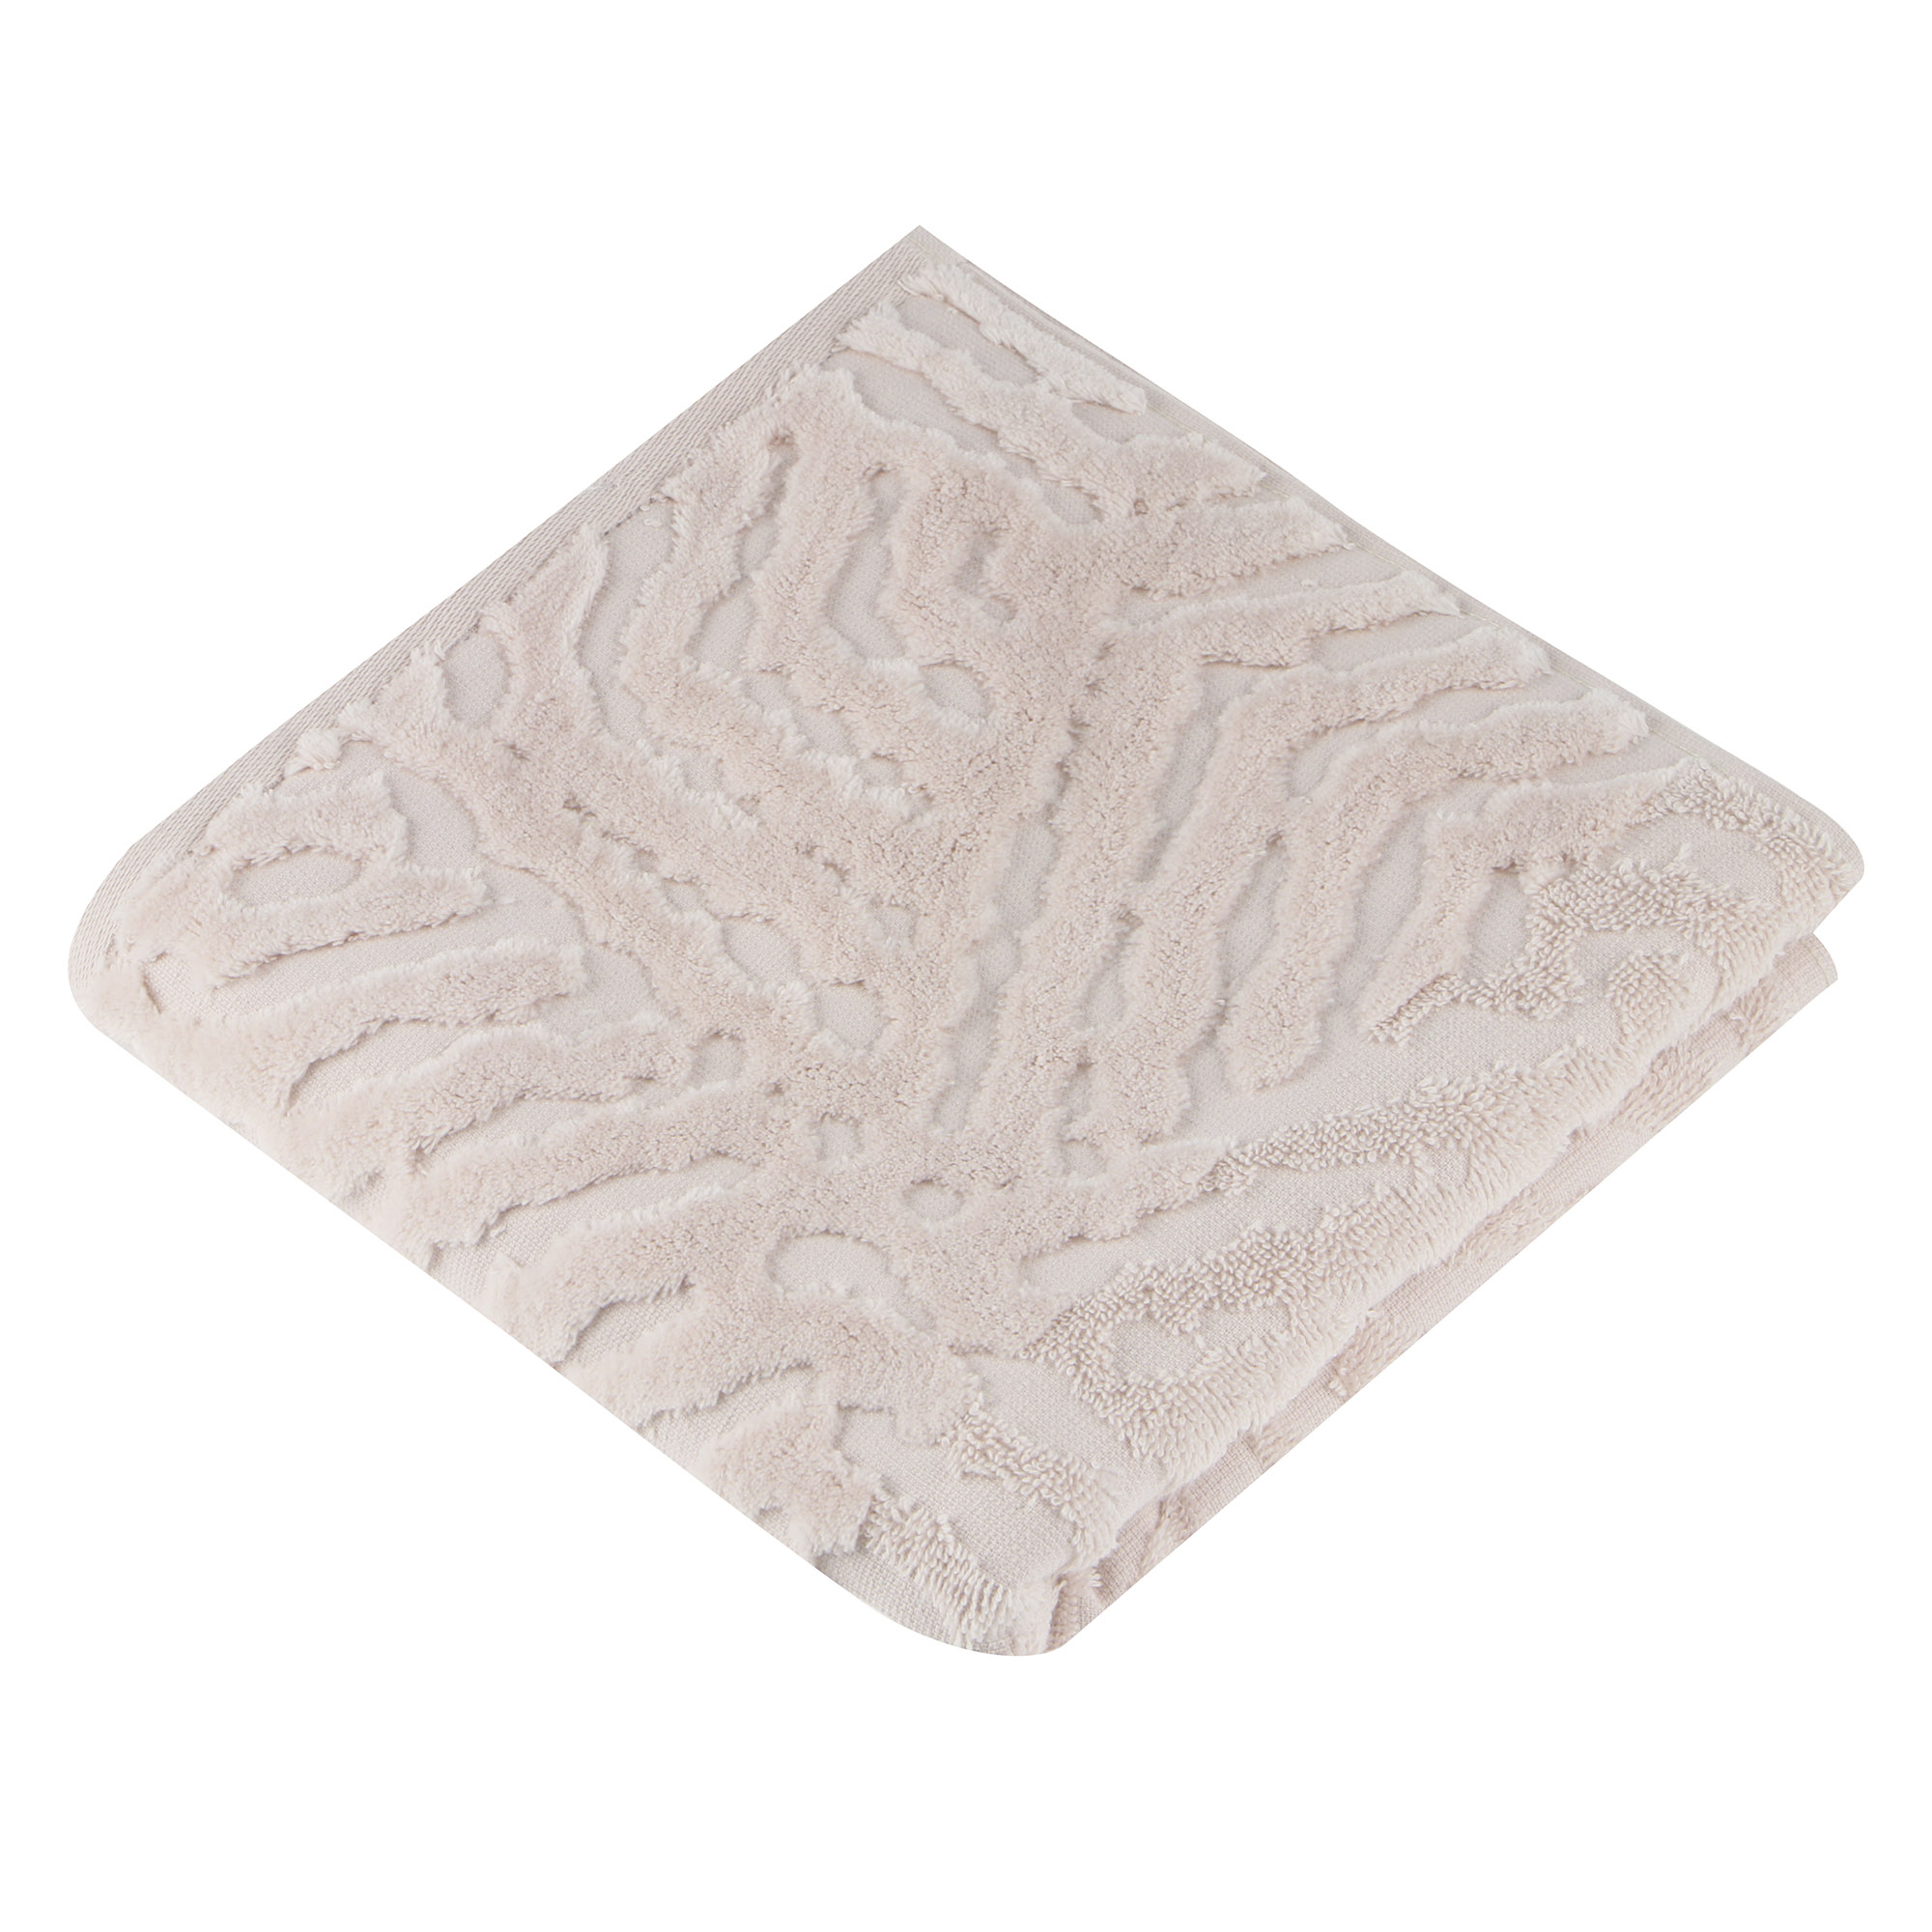 Полотенце махровое Cleanelly торта 50х100 гладкокрашенное с эффектом велюра полотенце махровое cleanelly форэста 50х100 бело горчичный